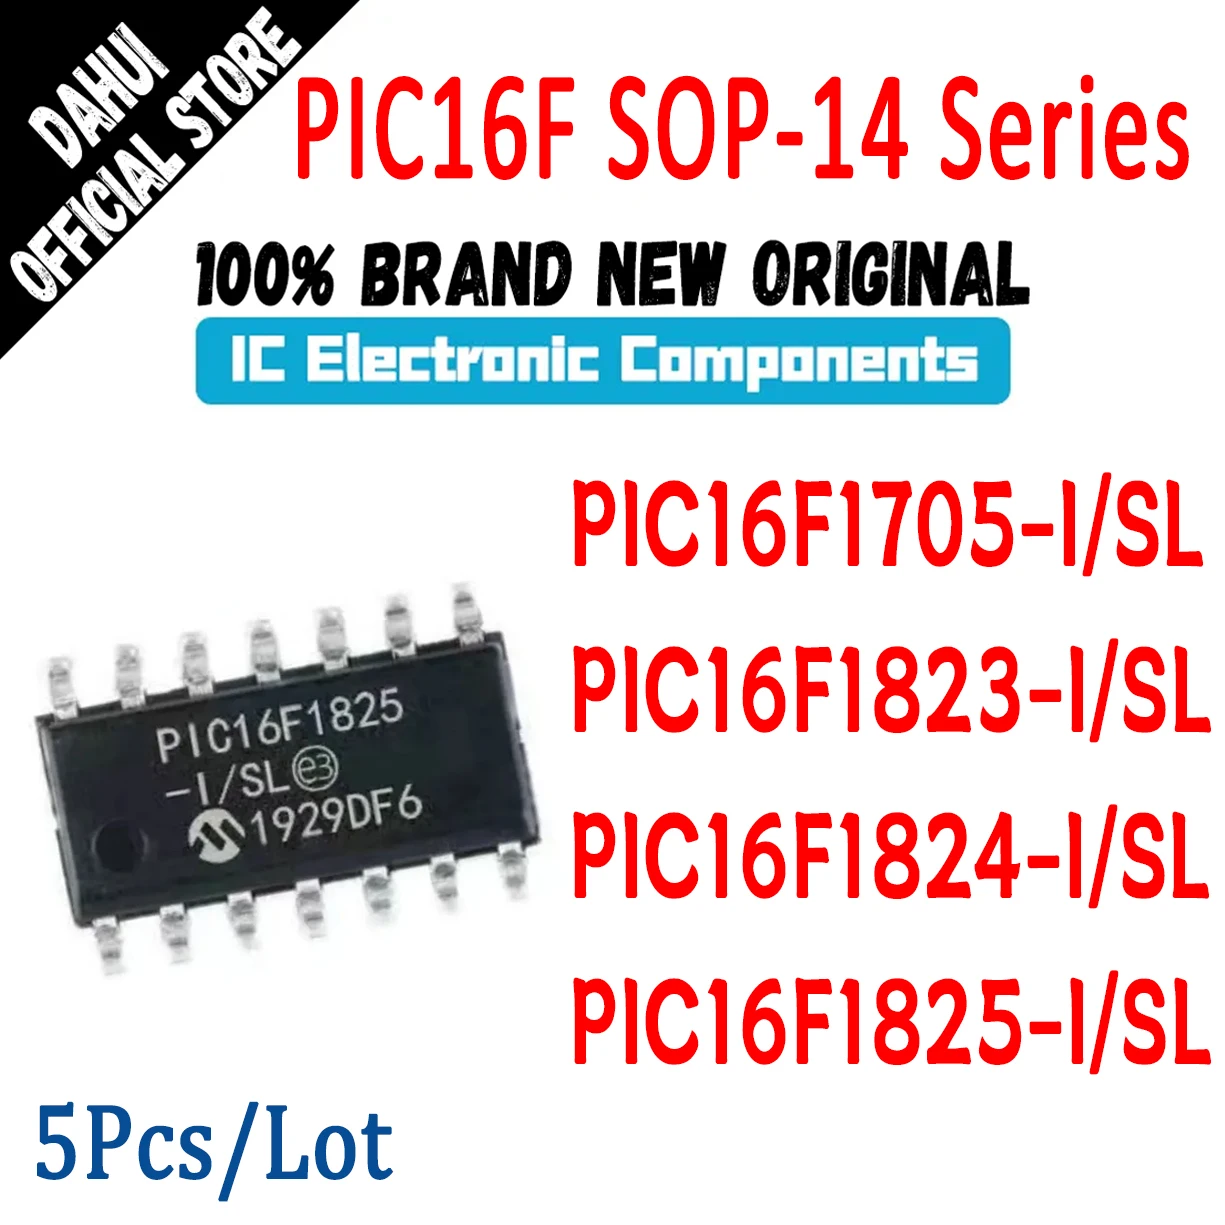 

PIC16F1705-I/SL PIC16F1823-I/SL PIC16F1824-I/SL PIC16F1825-I/SL PIC16F1705 PIC16F1823 PIC16F1824 PIC16F1825 PIC IC MCU Chip SOP